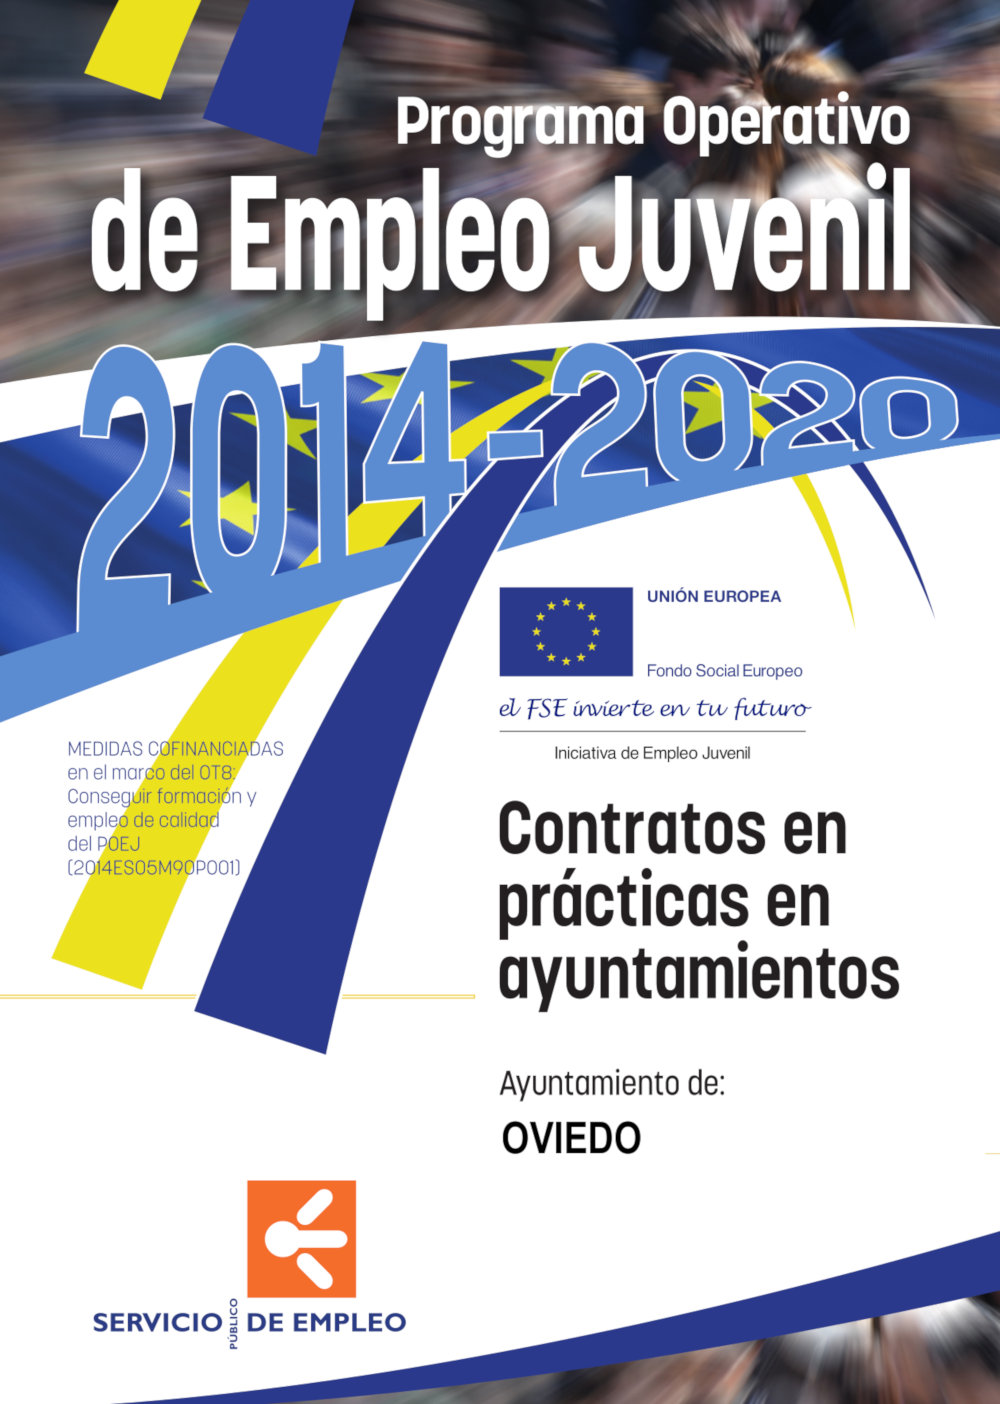 Cartel Programa Operativo de Empleo Juvenil 2014-2020